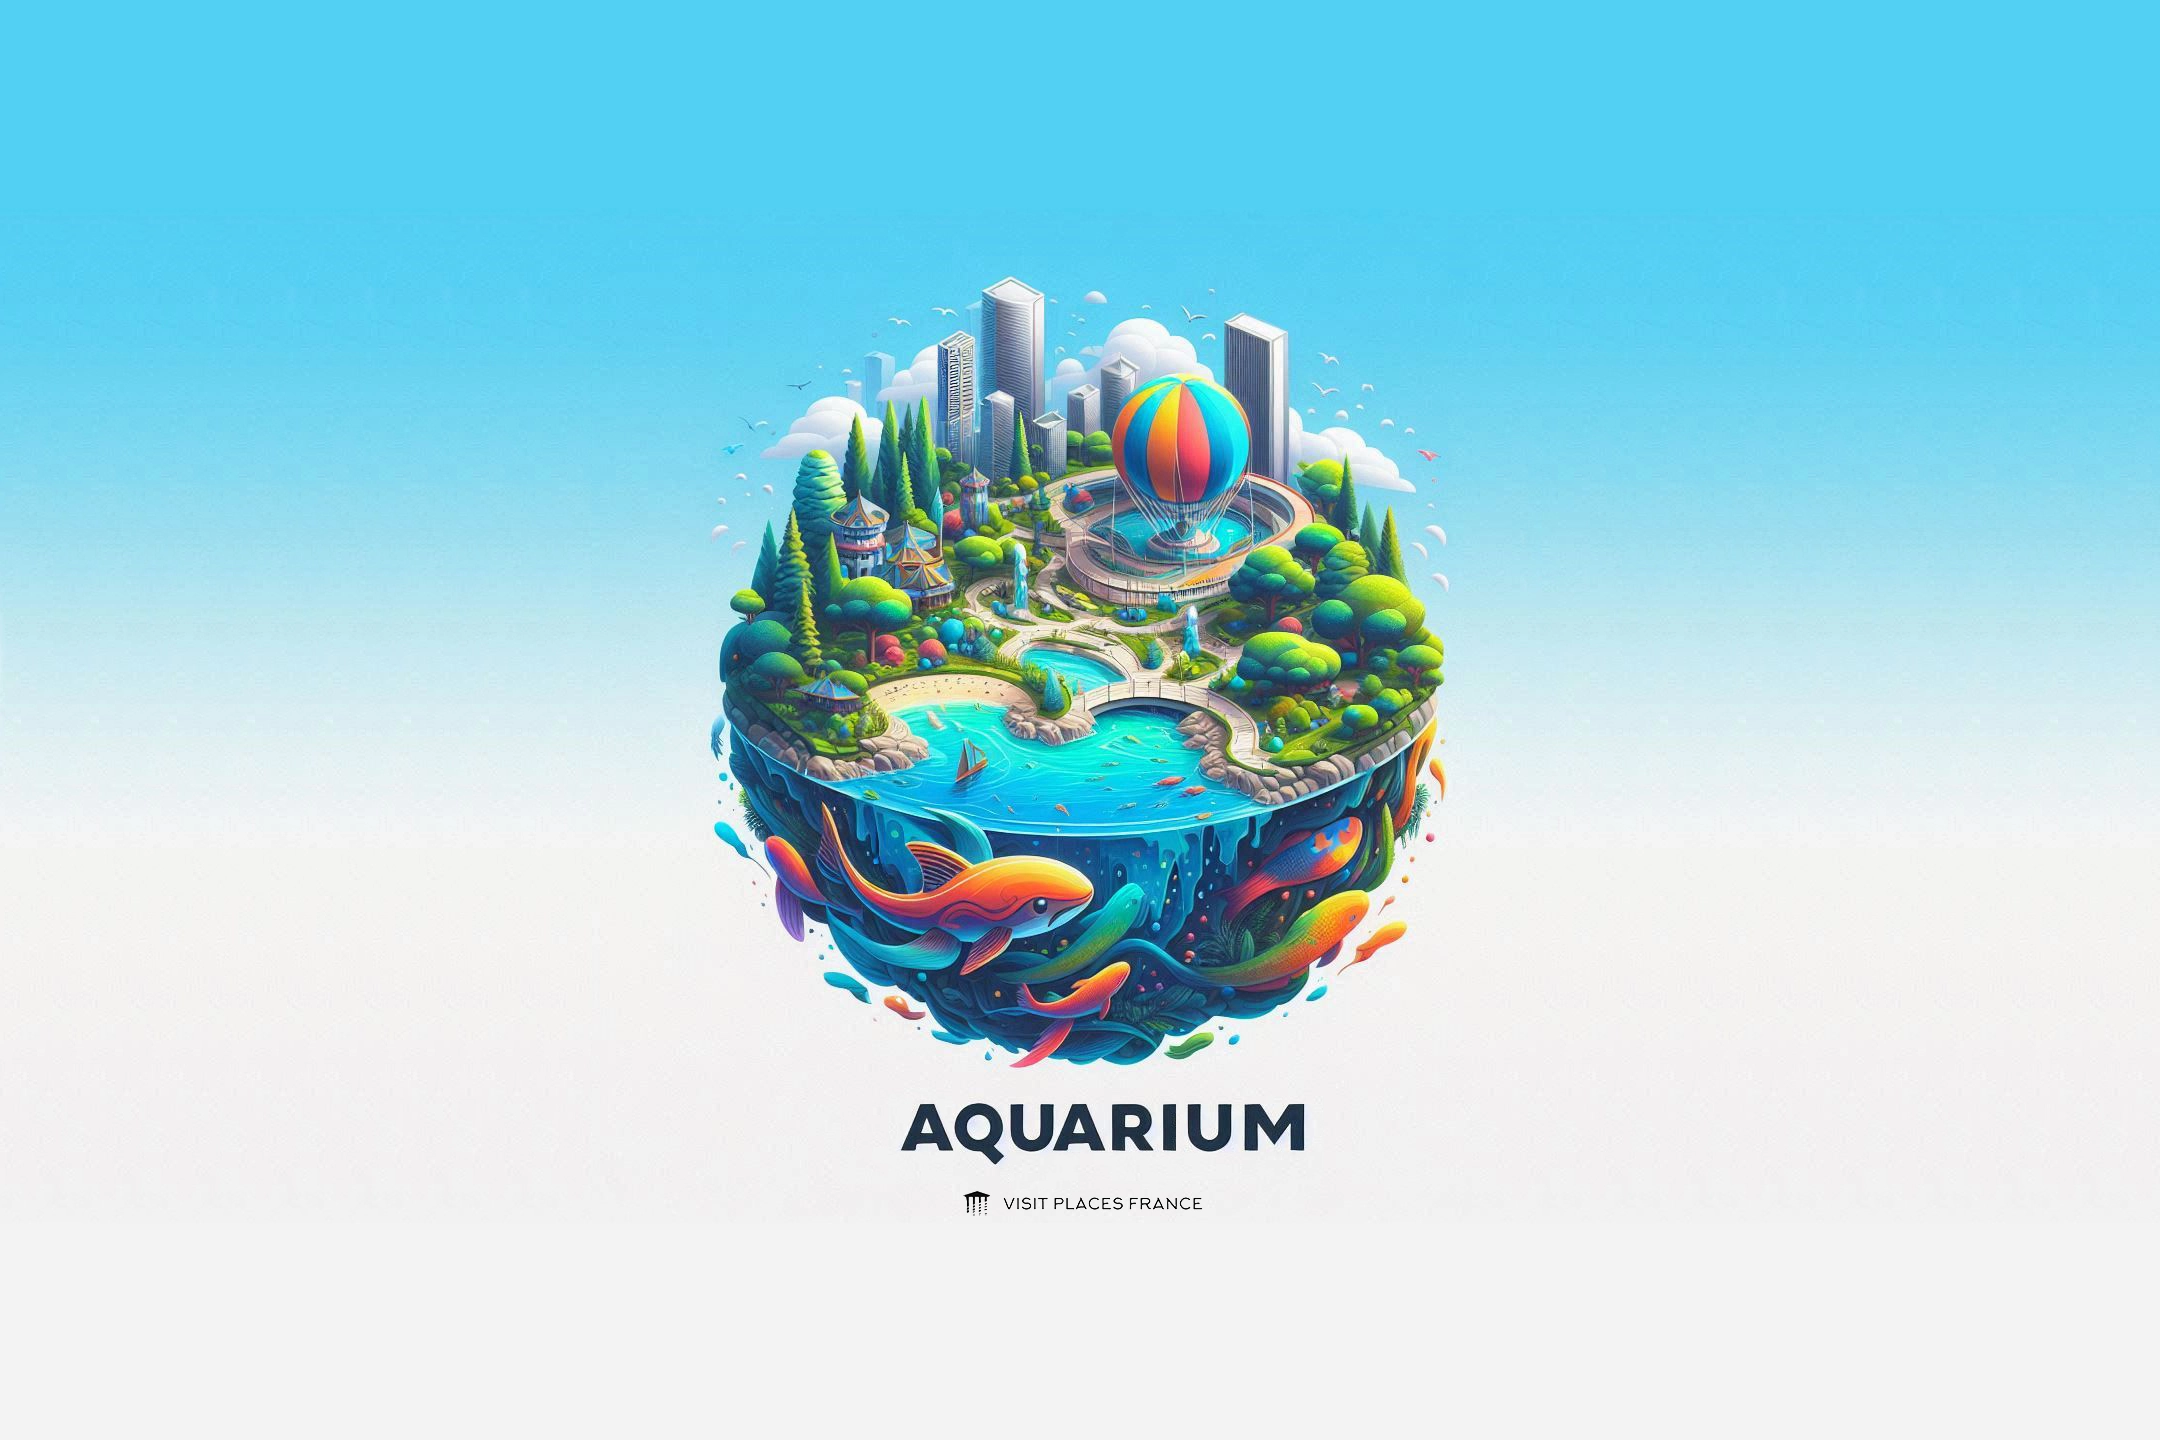 Aquarium of Lyon